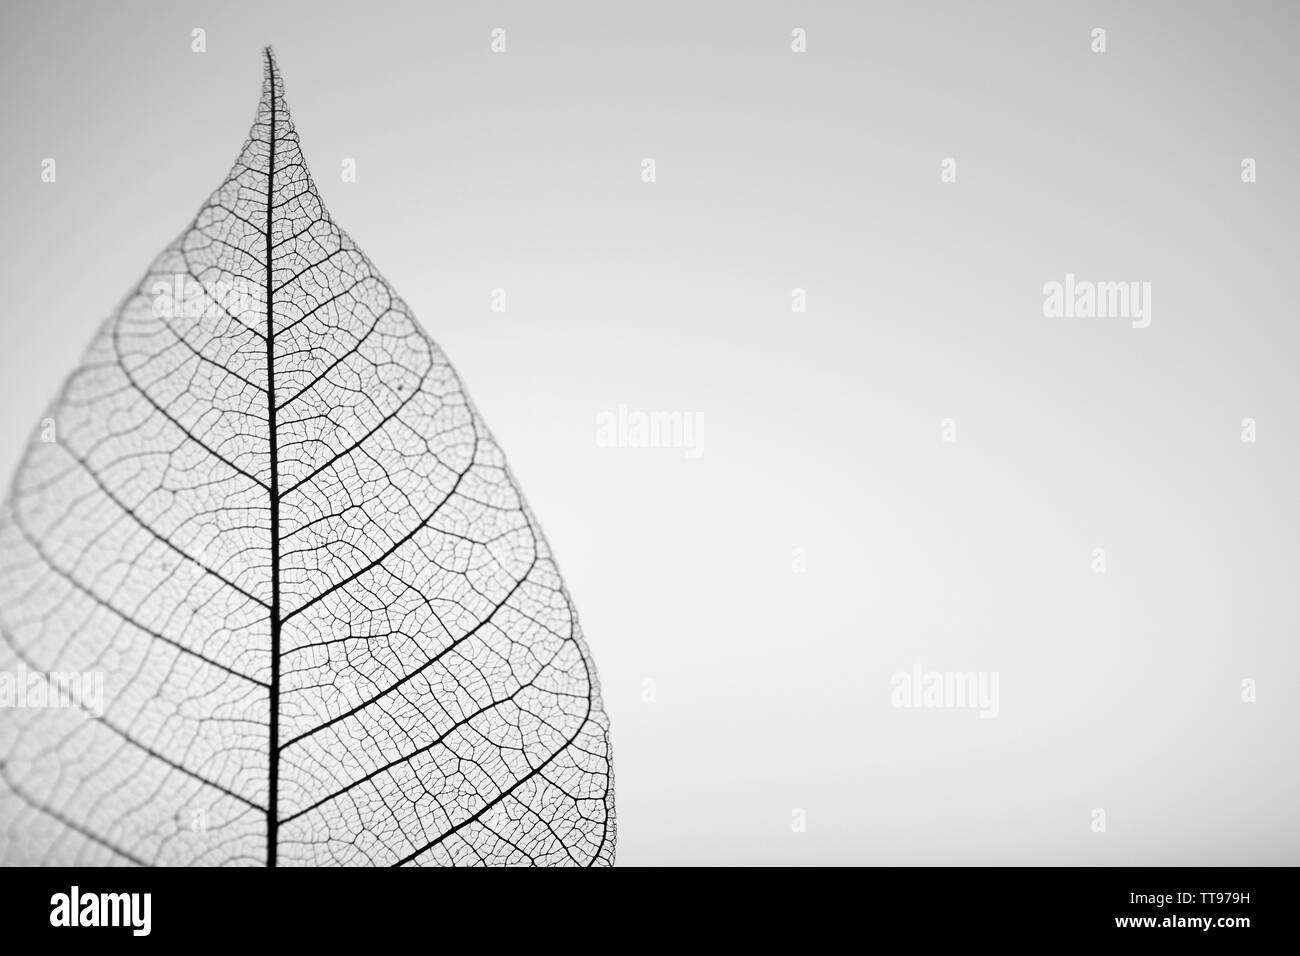 Skeleton leaf on grey background, close up Stock Photo